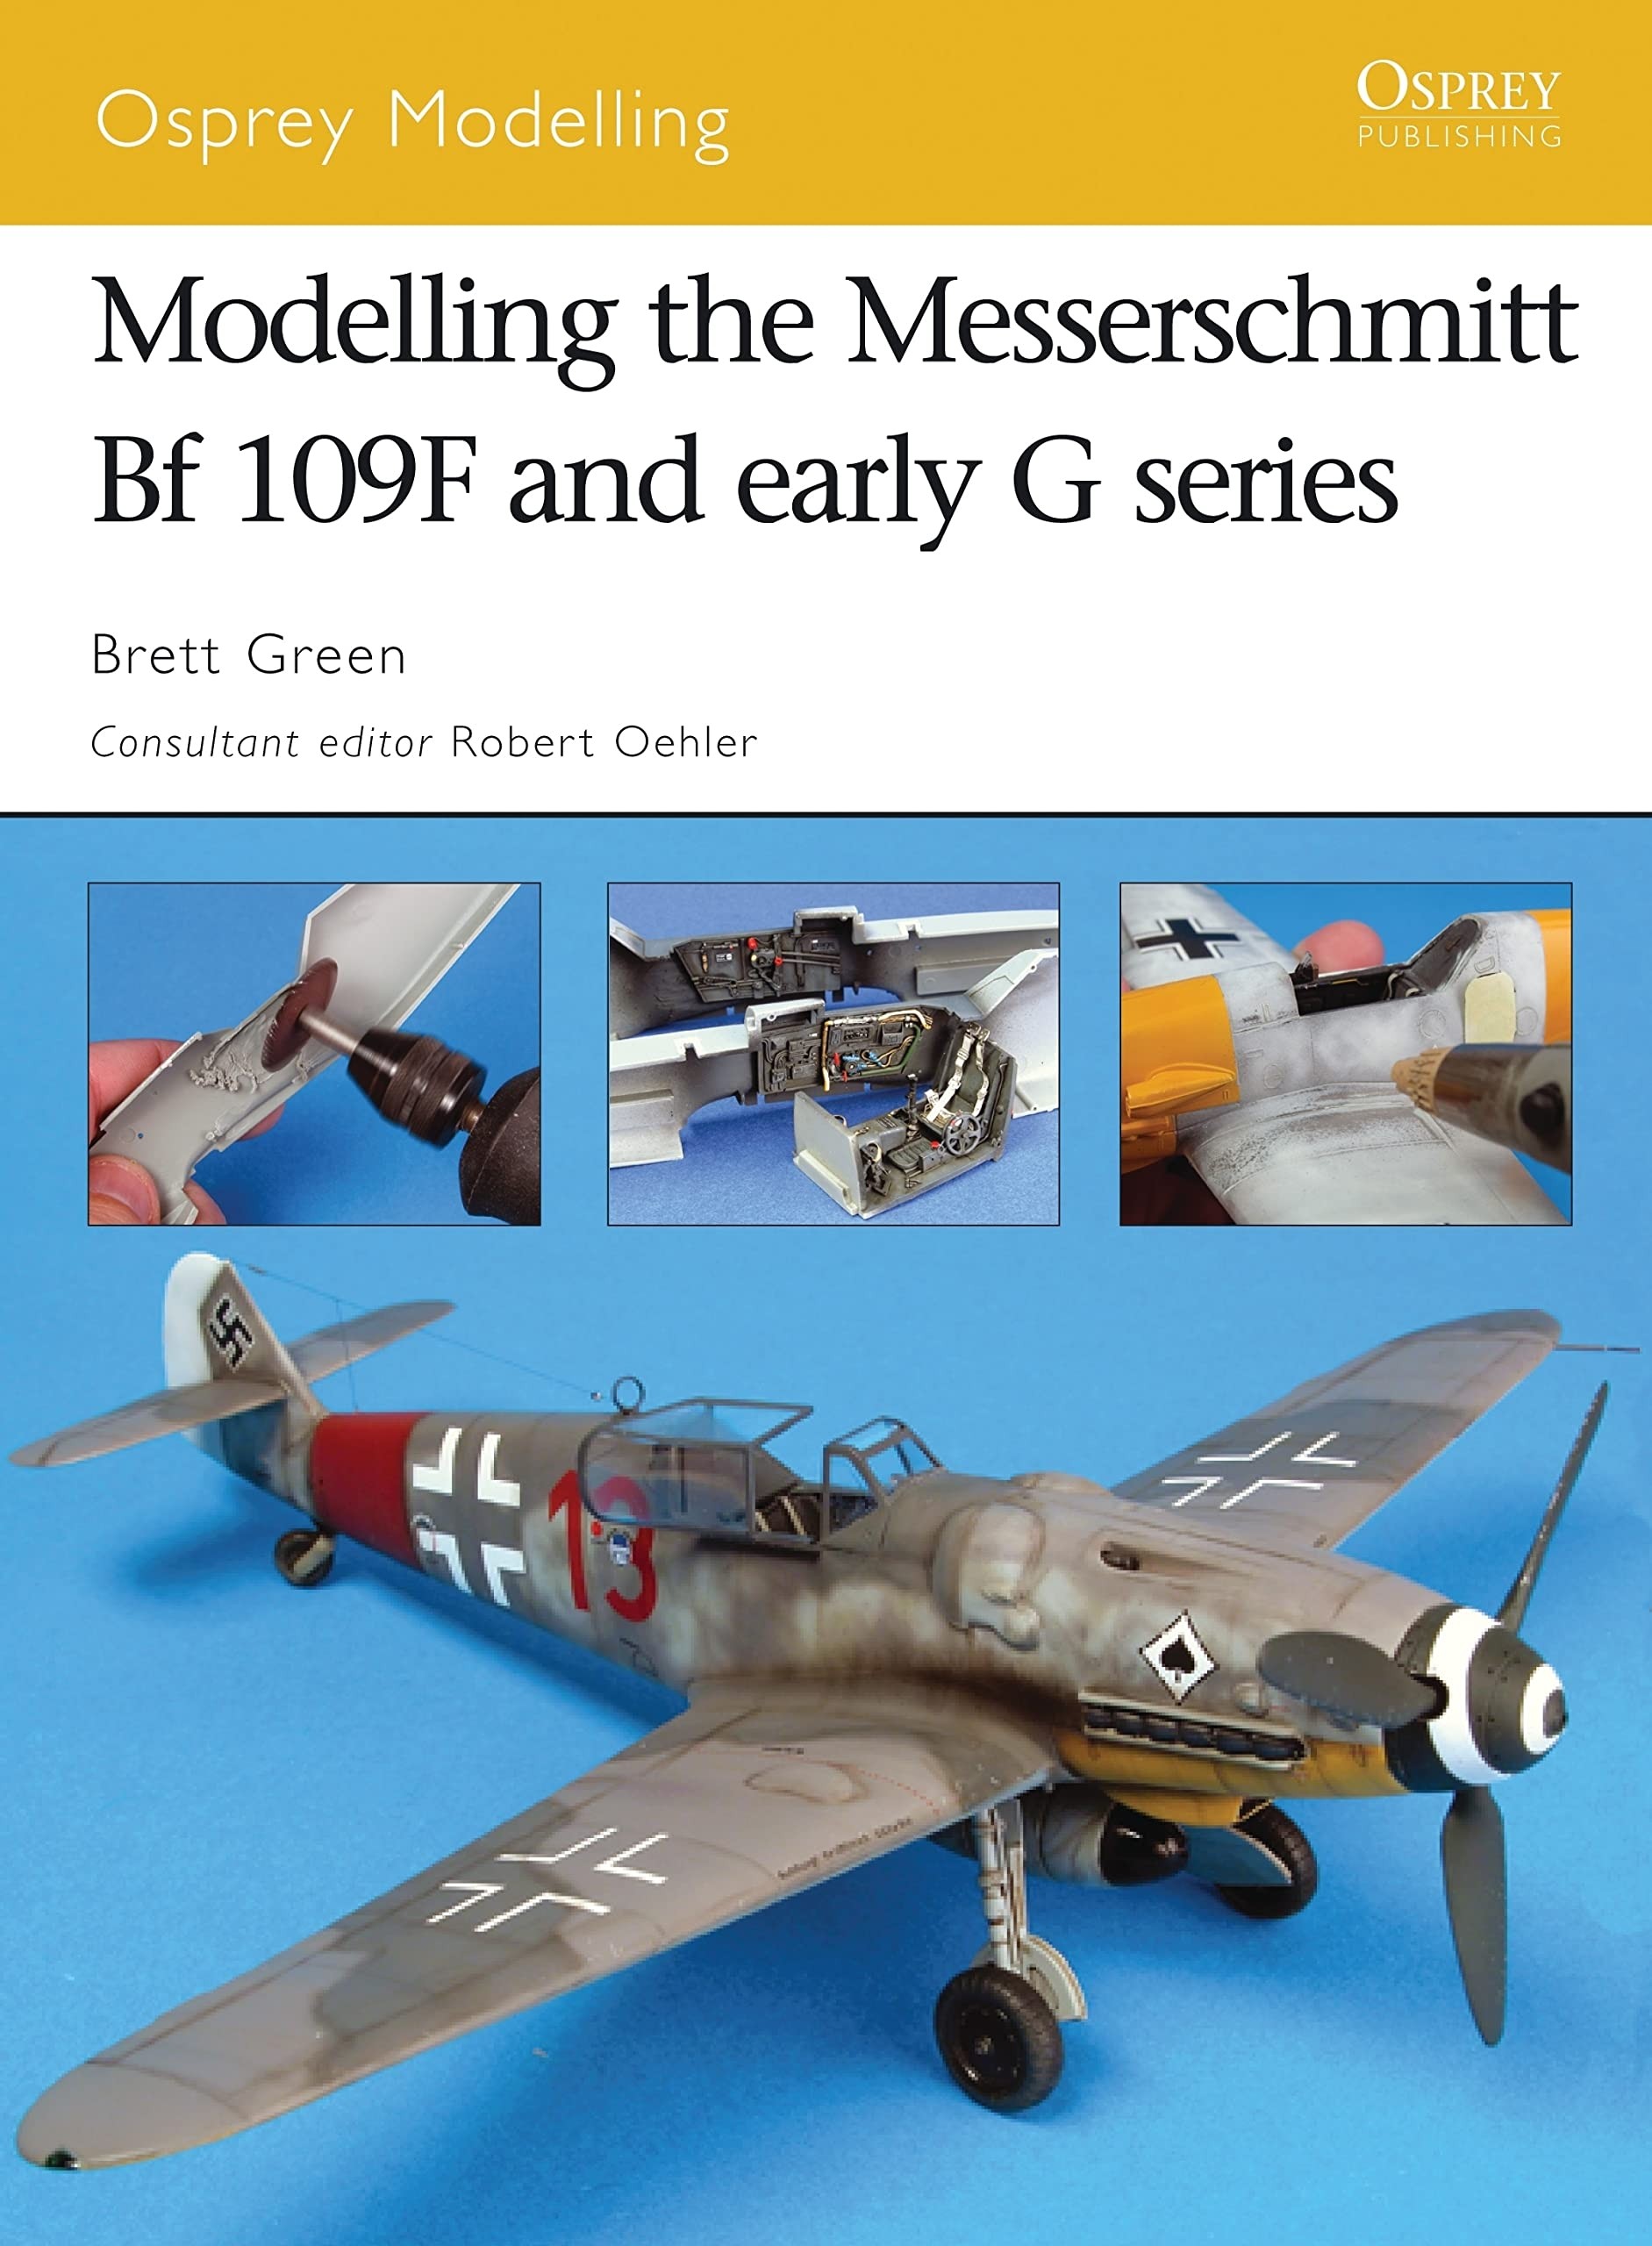 Modelling the Messerschmitt Me109F & early G series